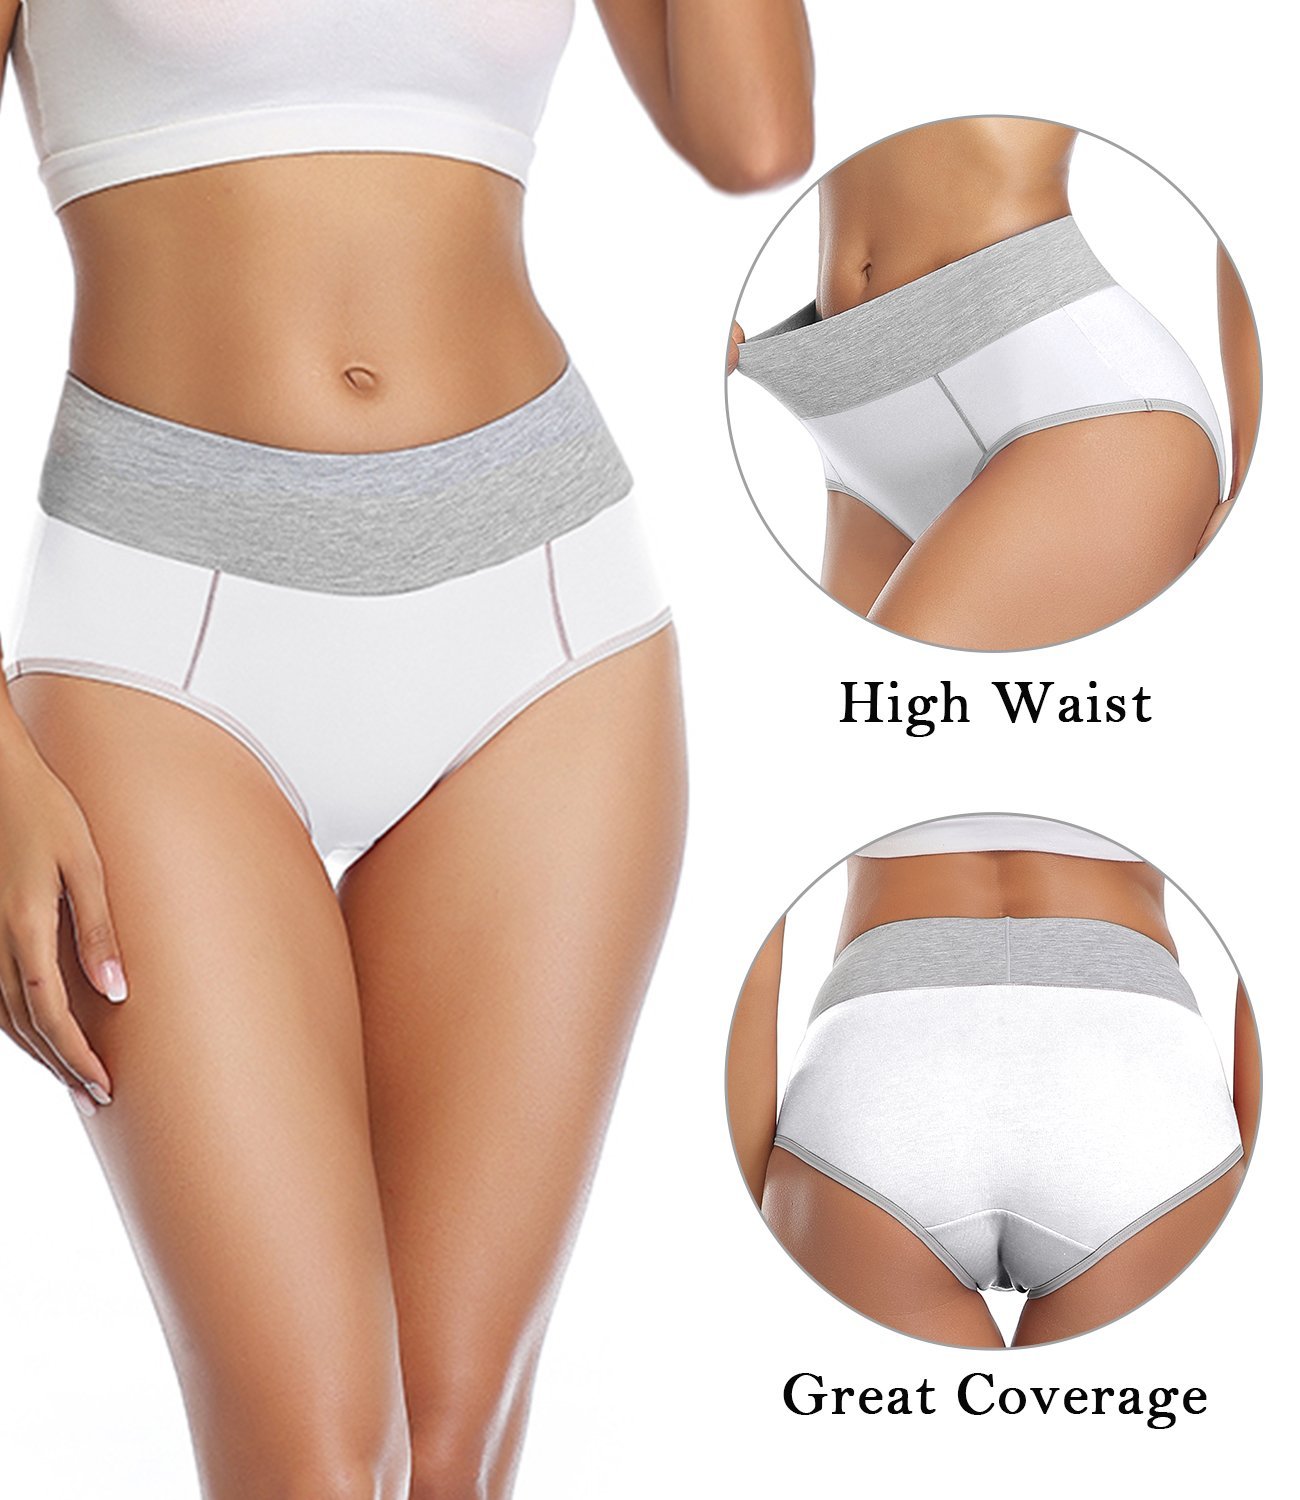 wirarpa Women's High Waisted Cotton Briefs Underwear 5 Pack